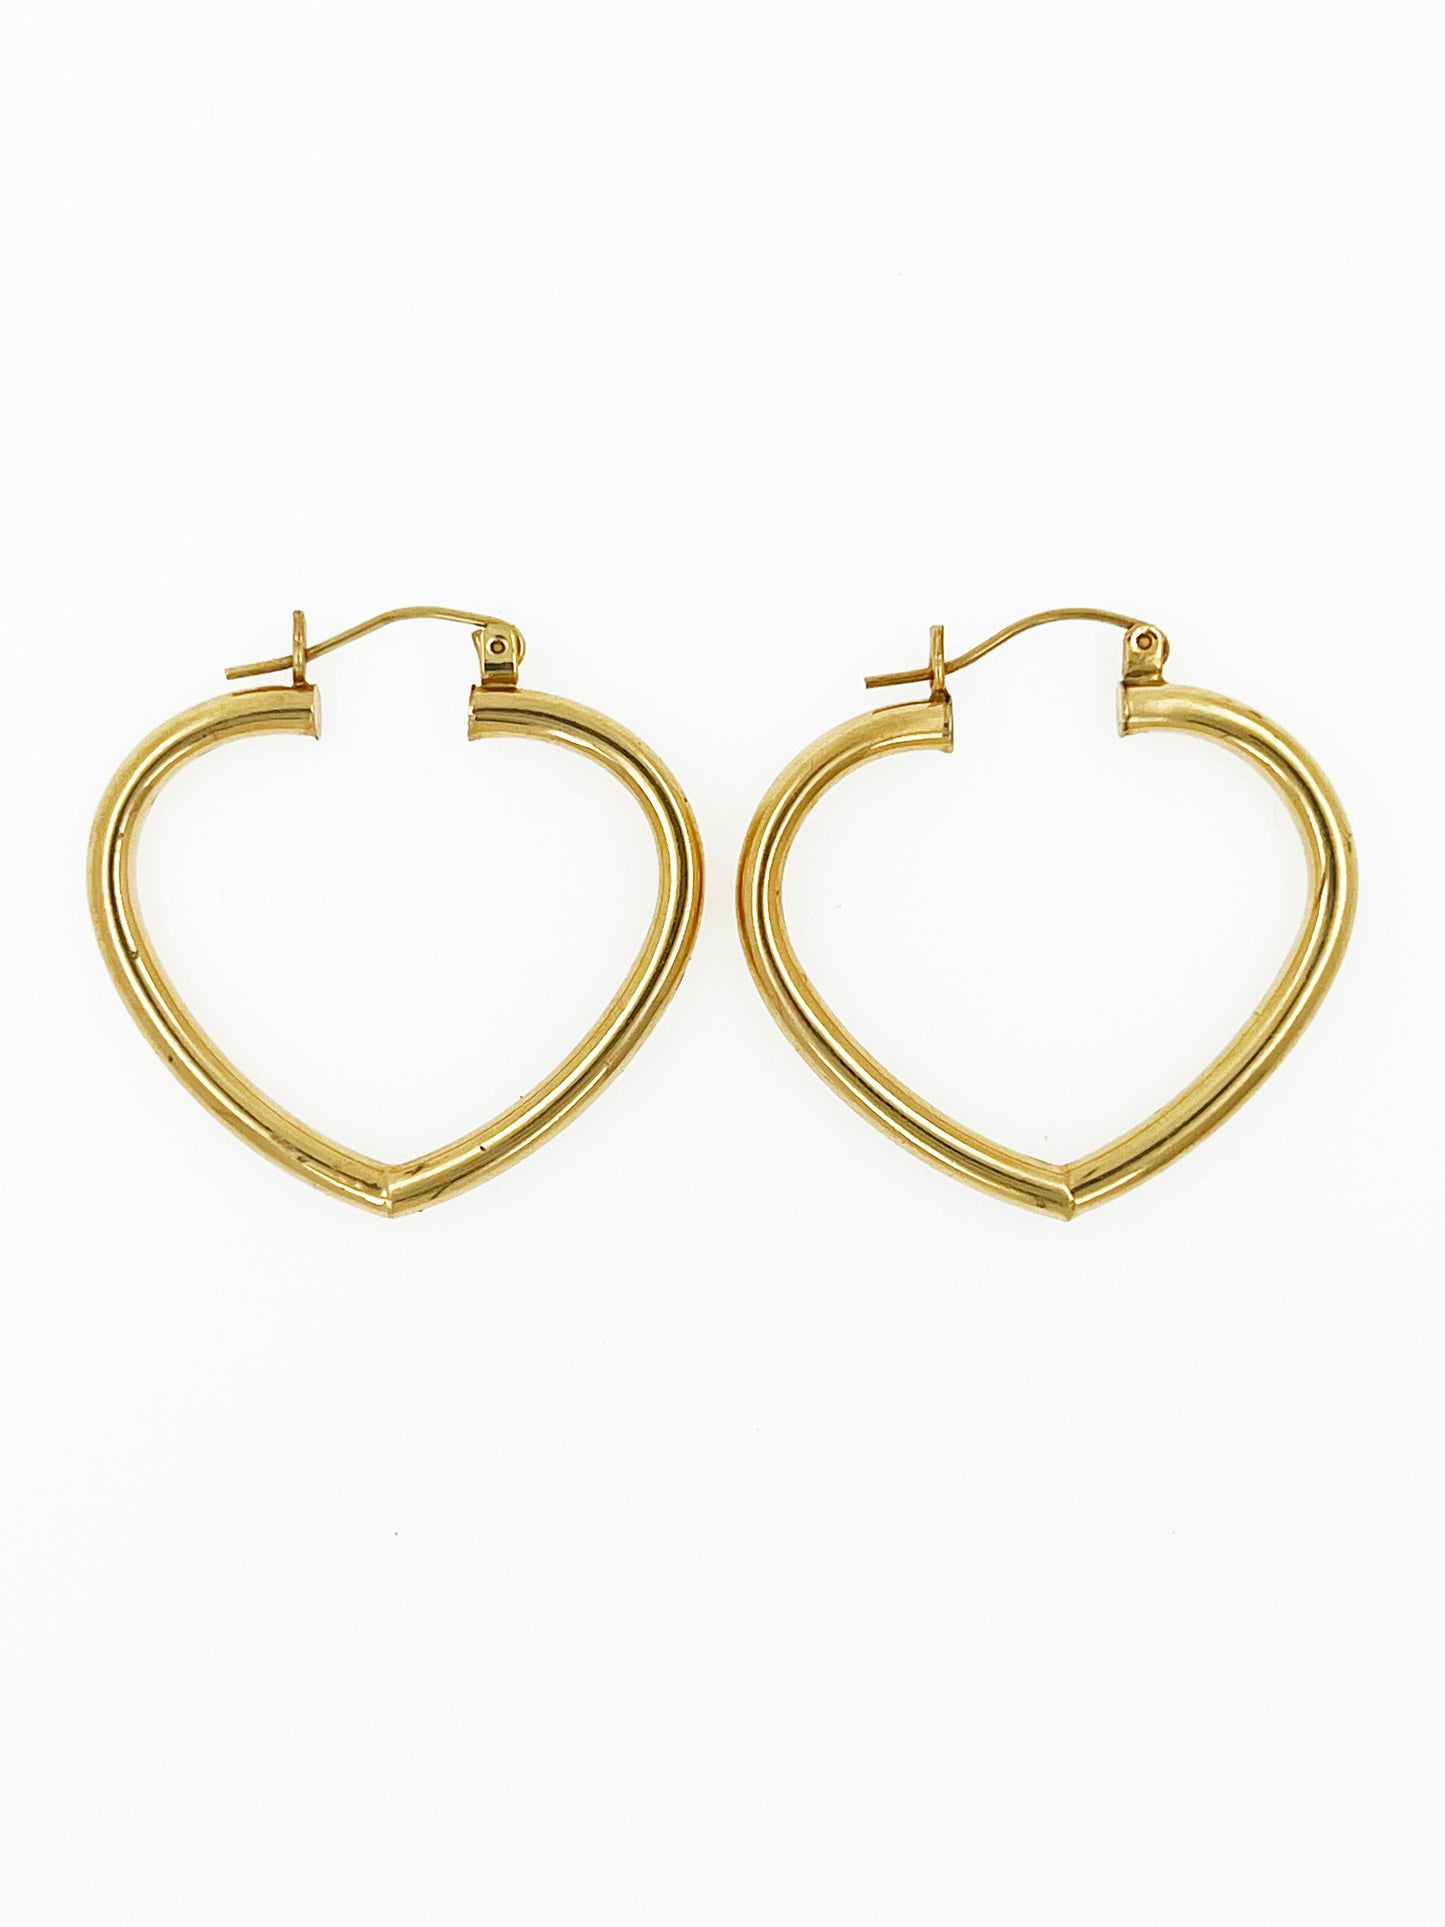 Heart Hoop Earrings in 14k Yellow Gold